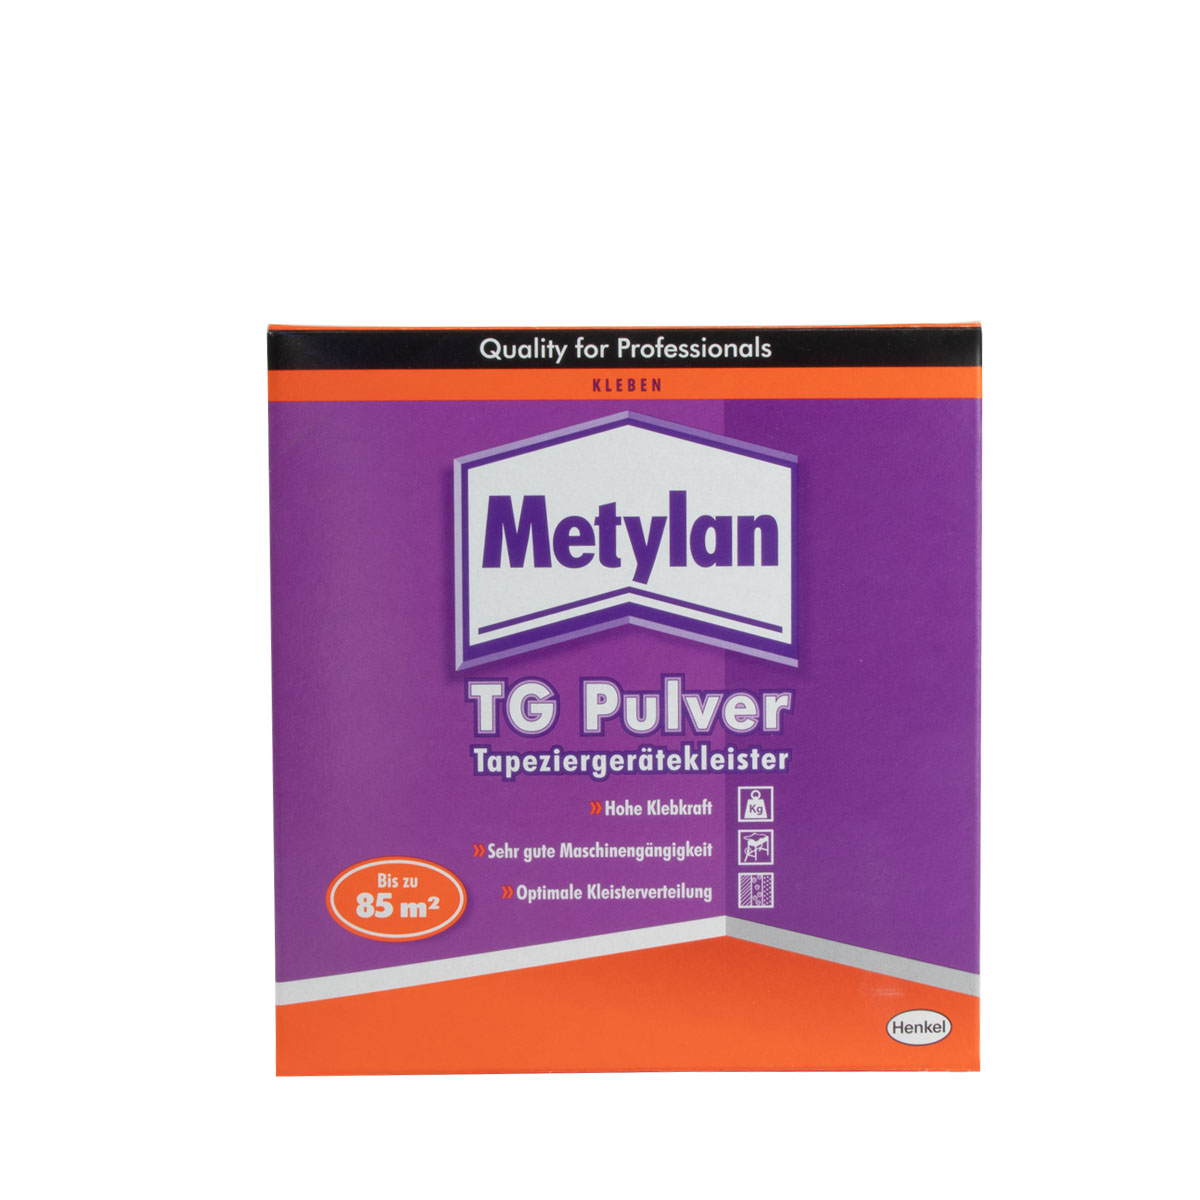 Metylan TG Pulver Tapeziergerätekleister 500g MTGI5, Instant